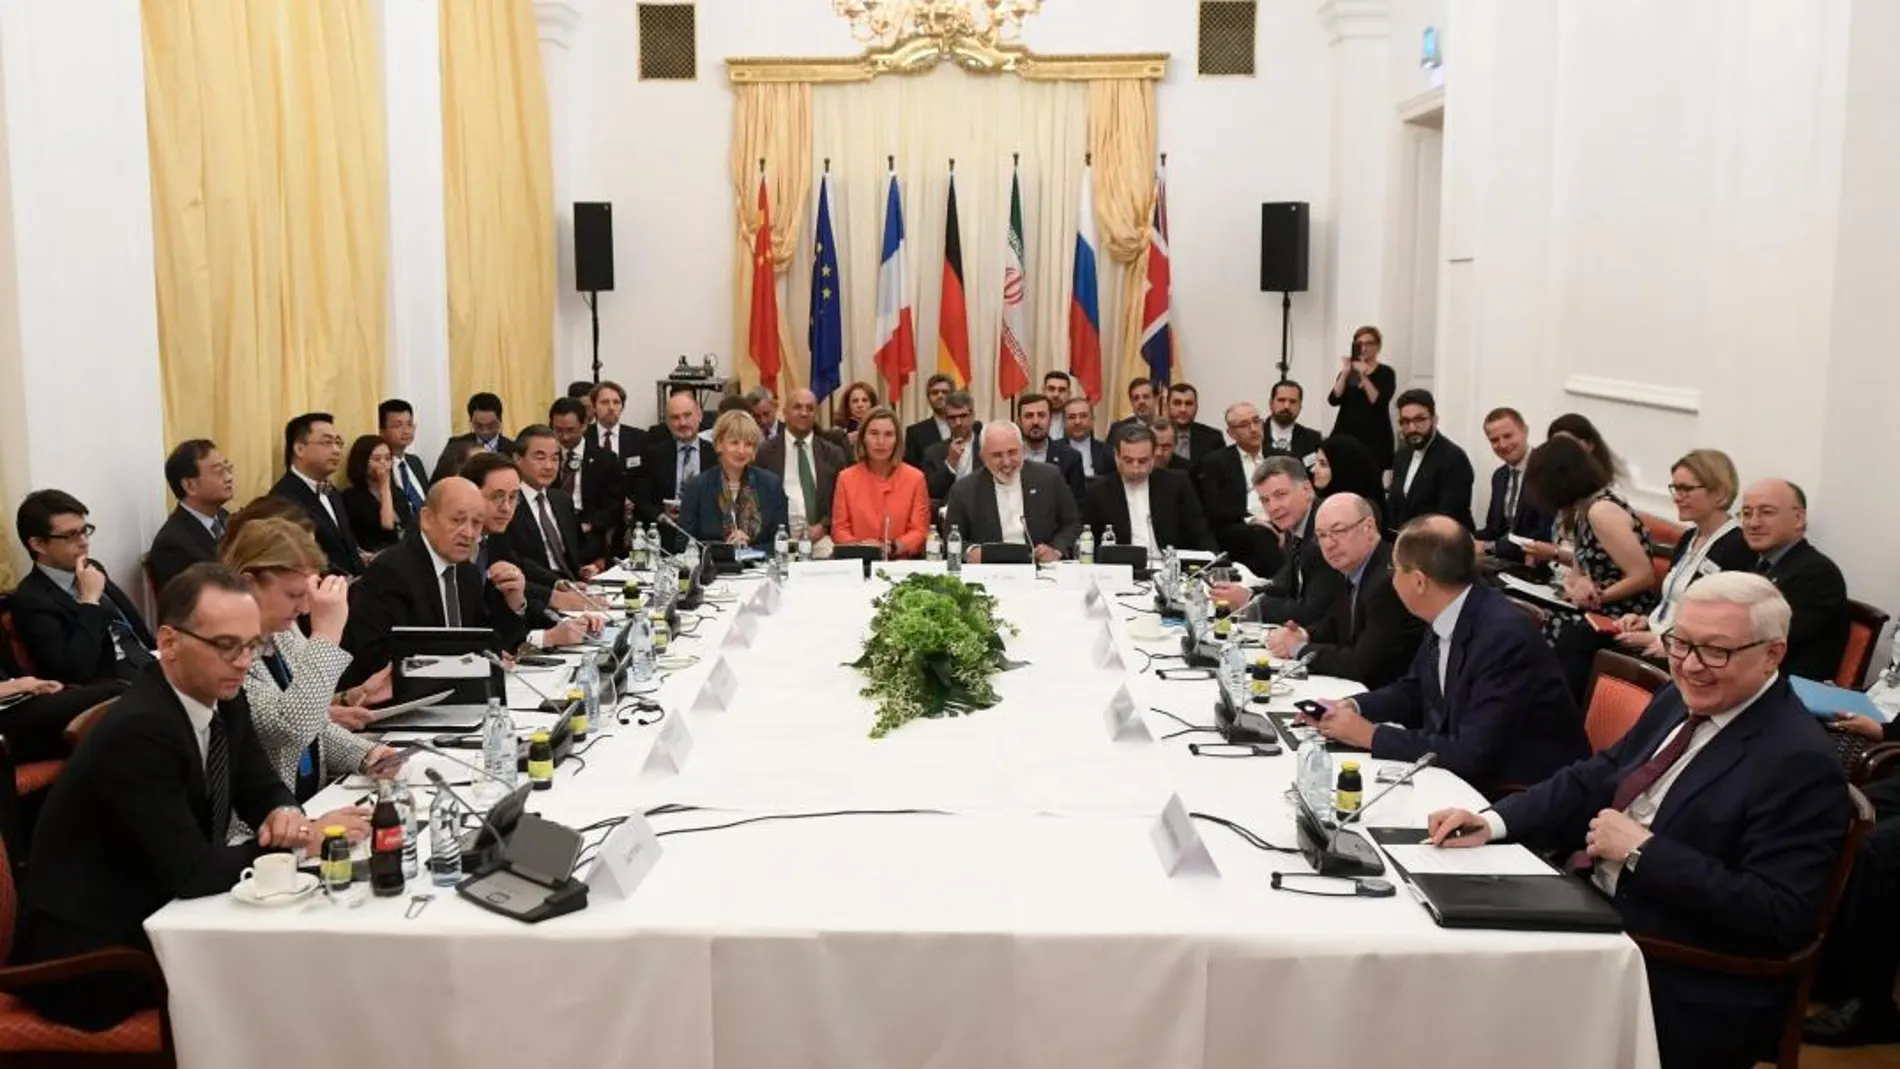 Los miembros del "plan conjunto de acción"(JCPOA, en sus siglas en inglés), asisten a la reunión ministerial en el Palacio Coburgo en Viena, Austria / Foto: Efe